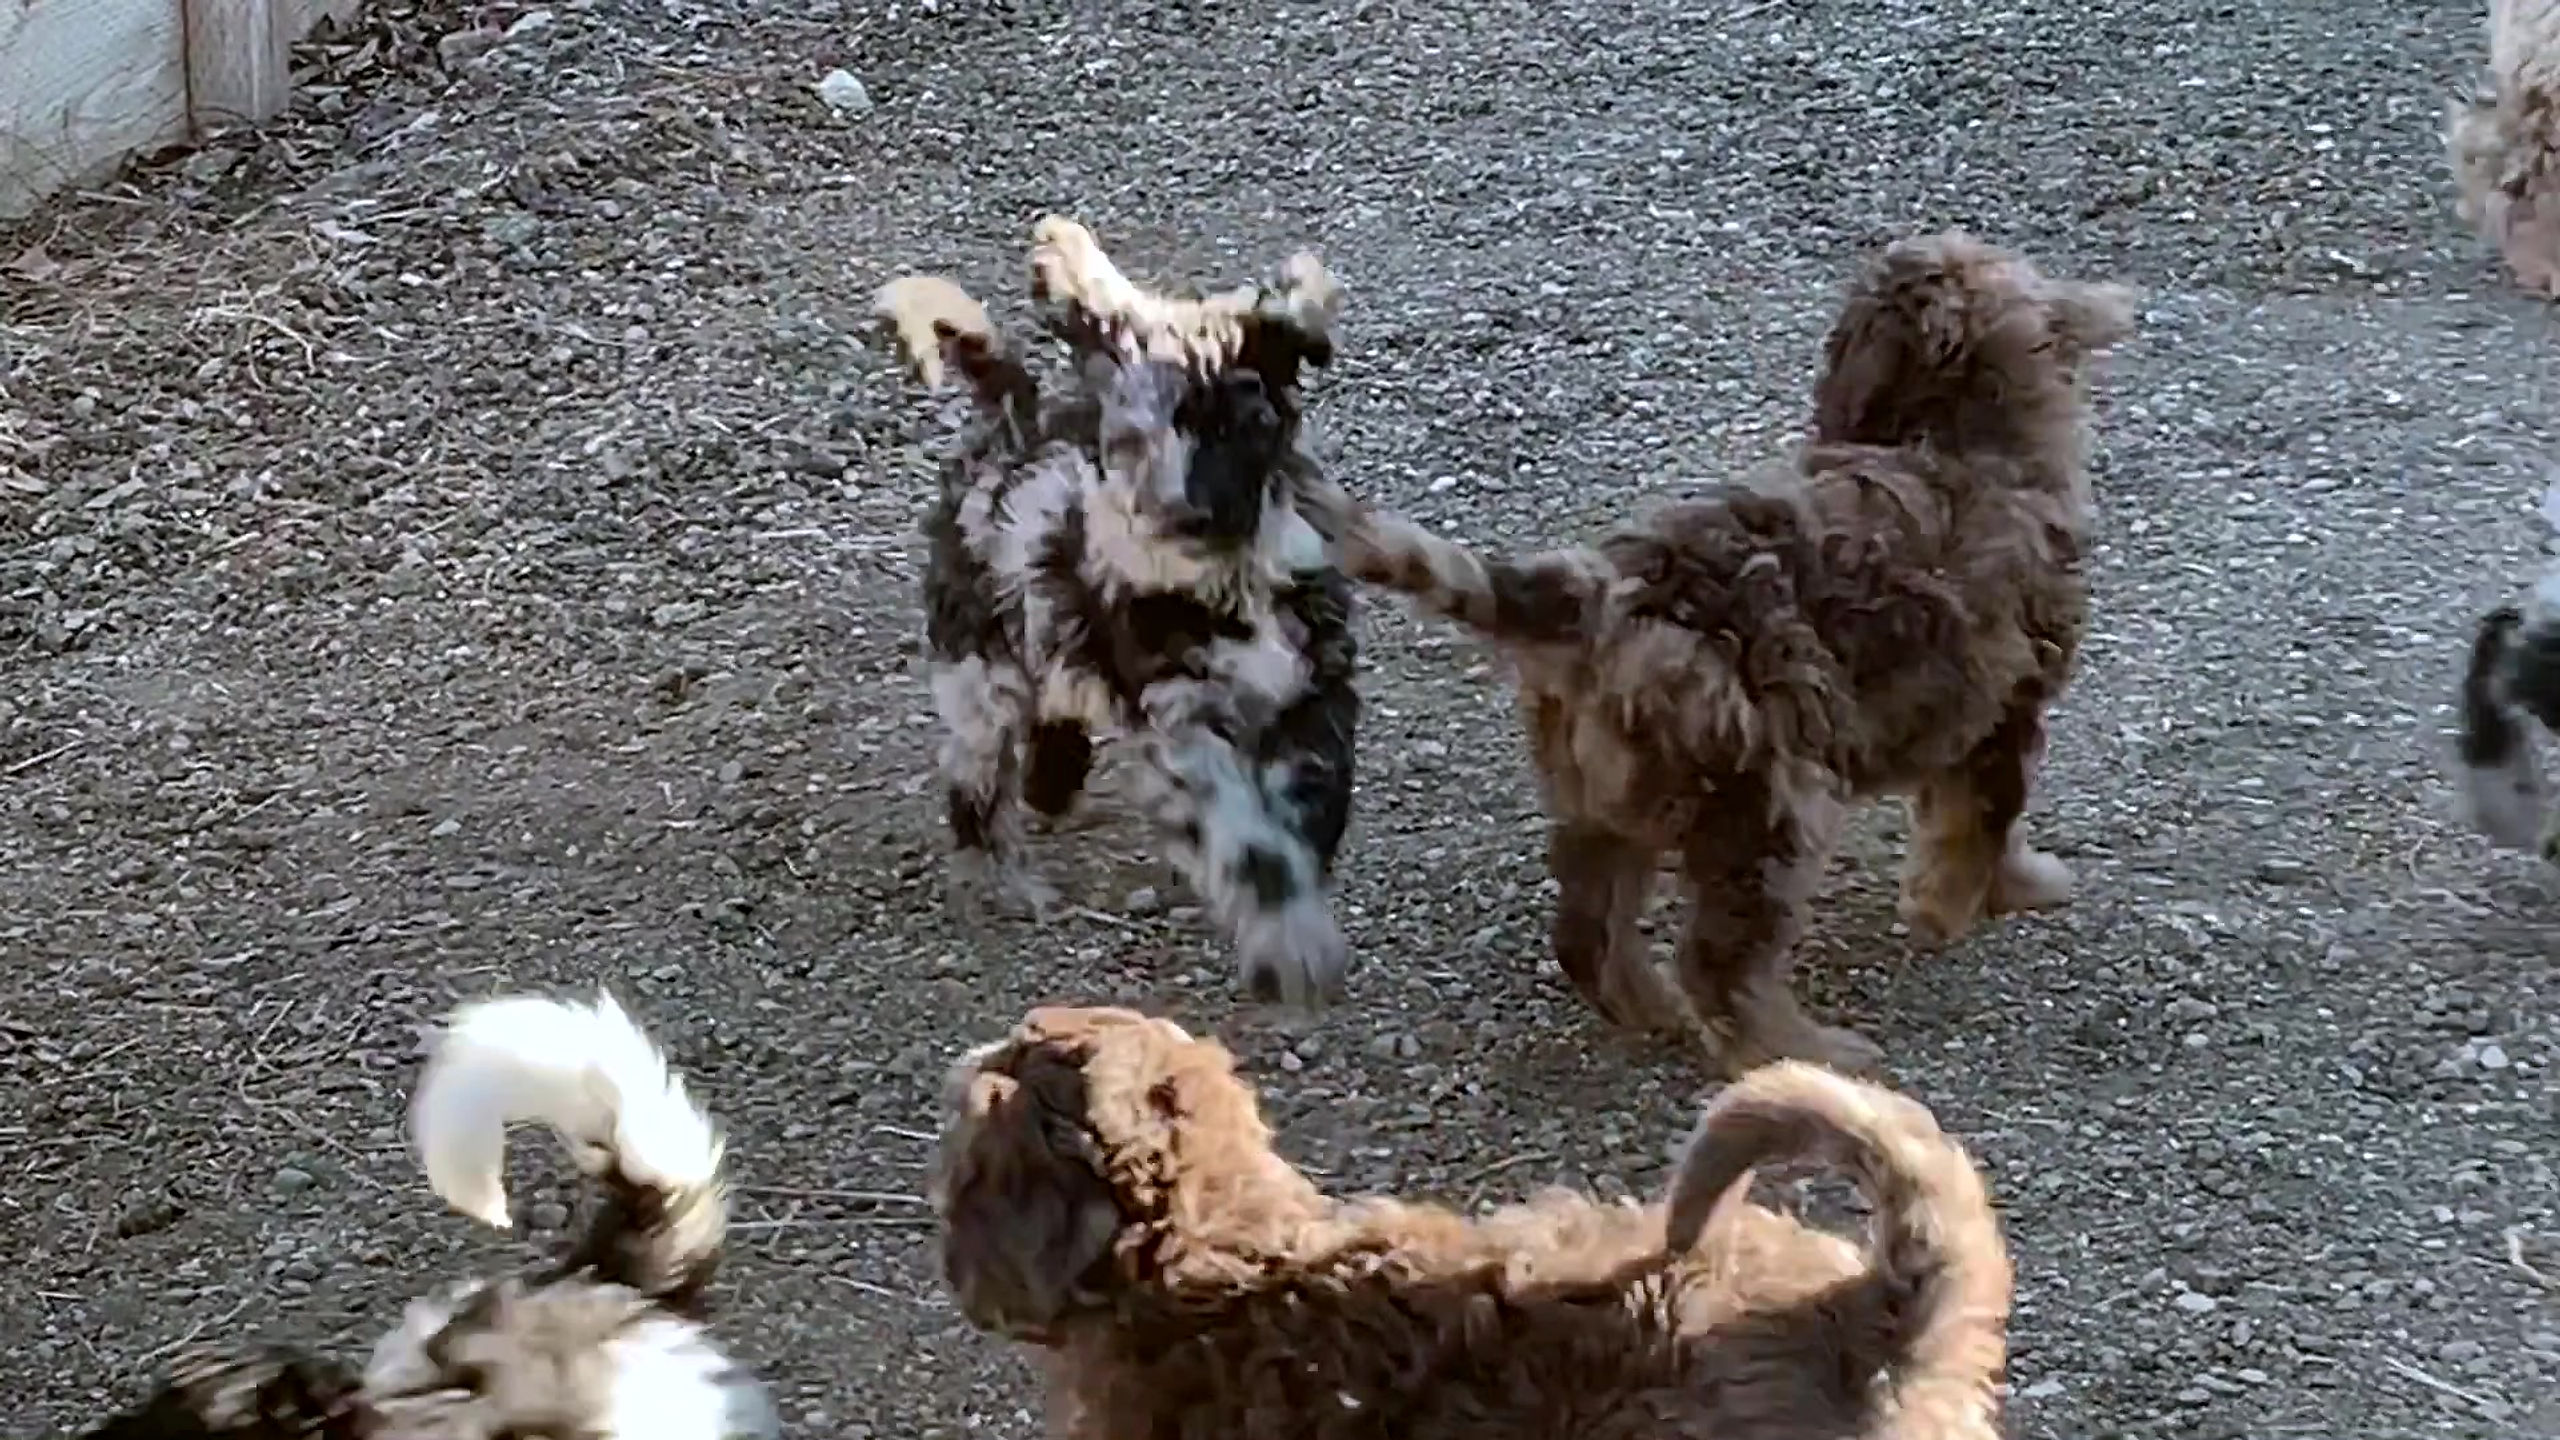 Puppies at Play